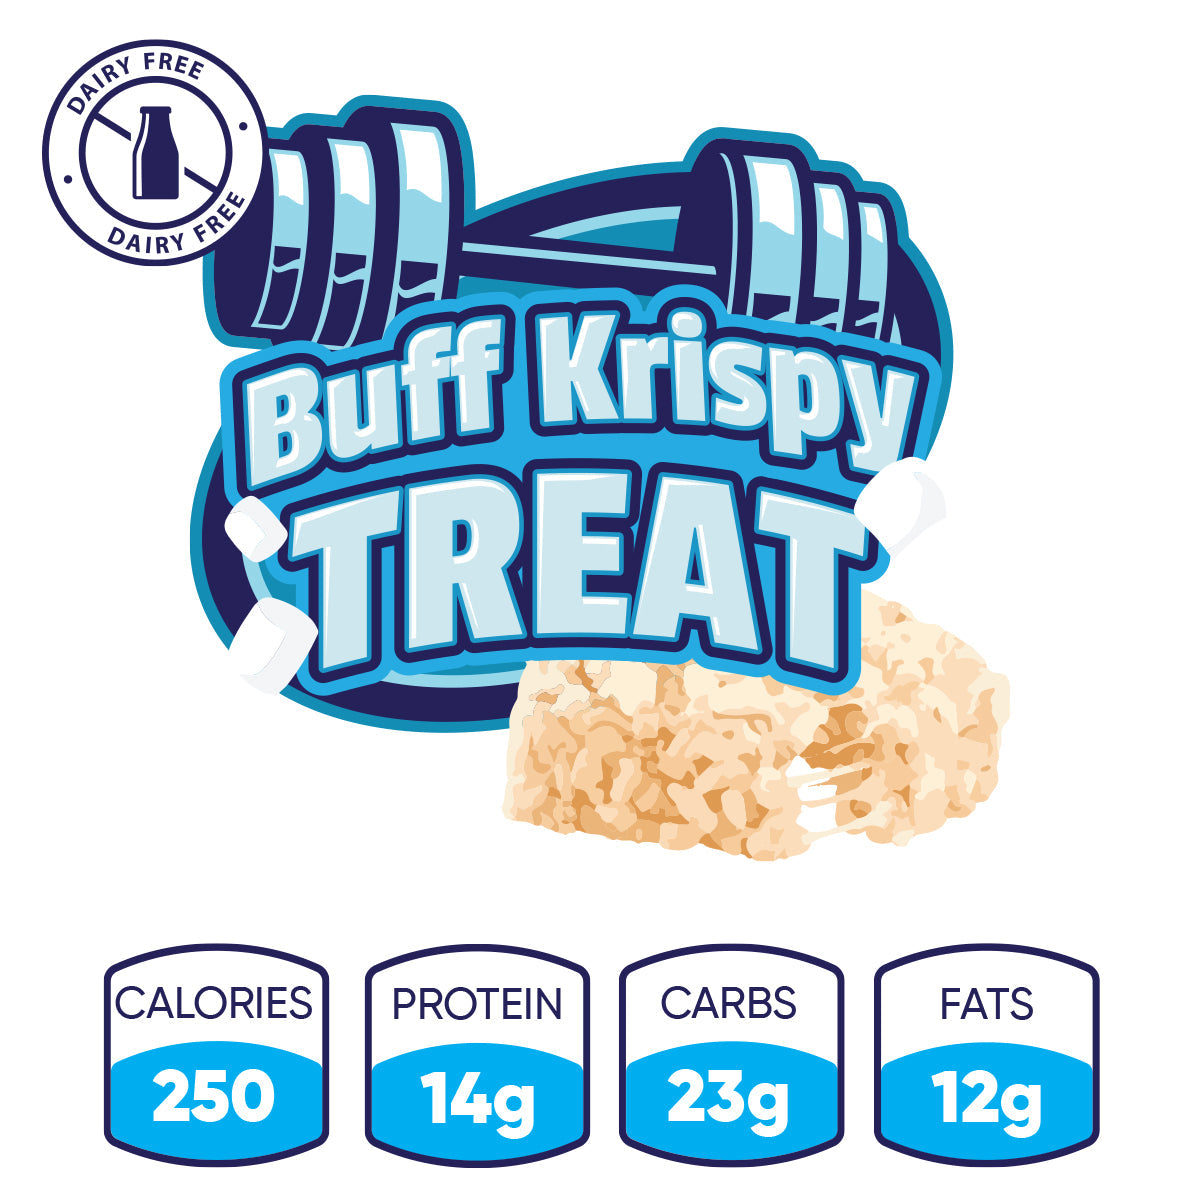 Buff Krispy Treat – Hummus Fit